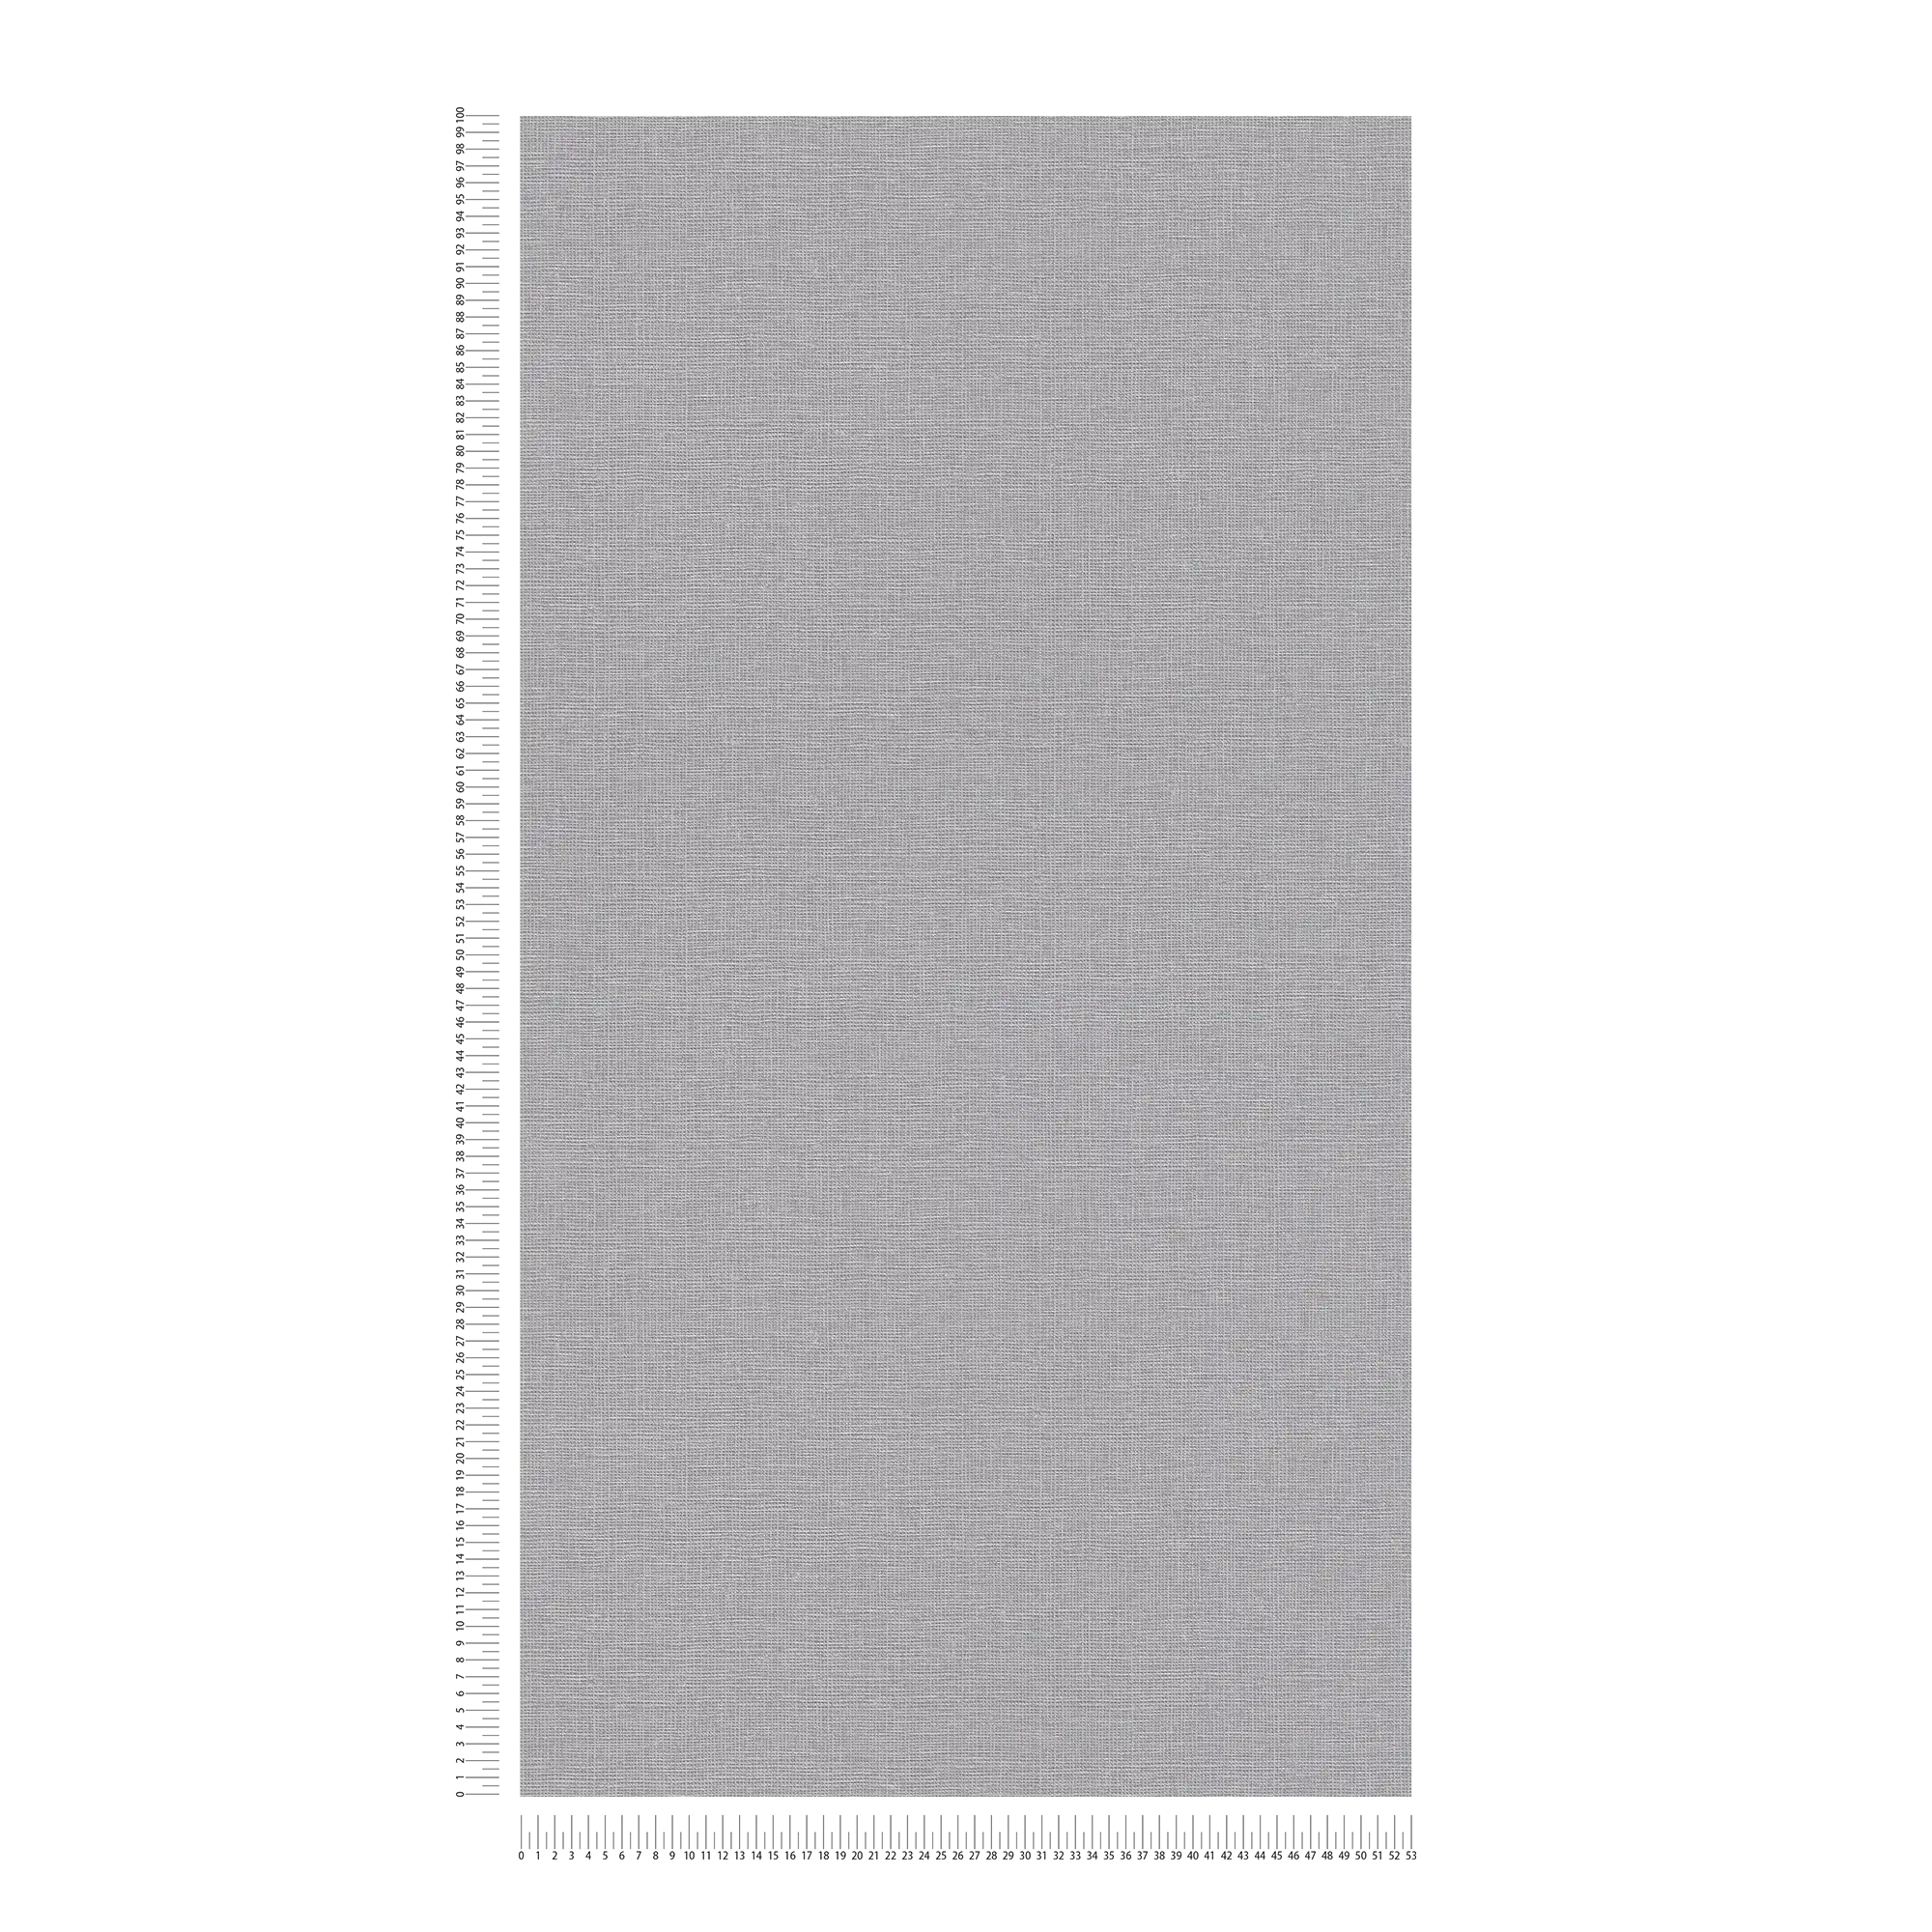             Carta da parati in tessuto non tessuto a tinta unita con struttura in lino - grigio scuro
        